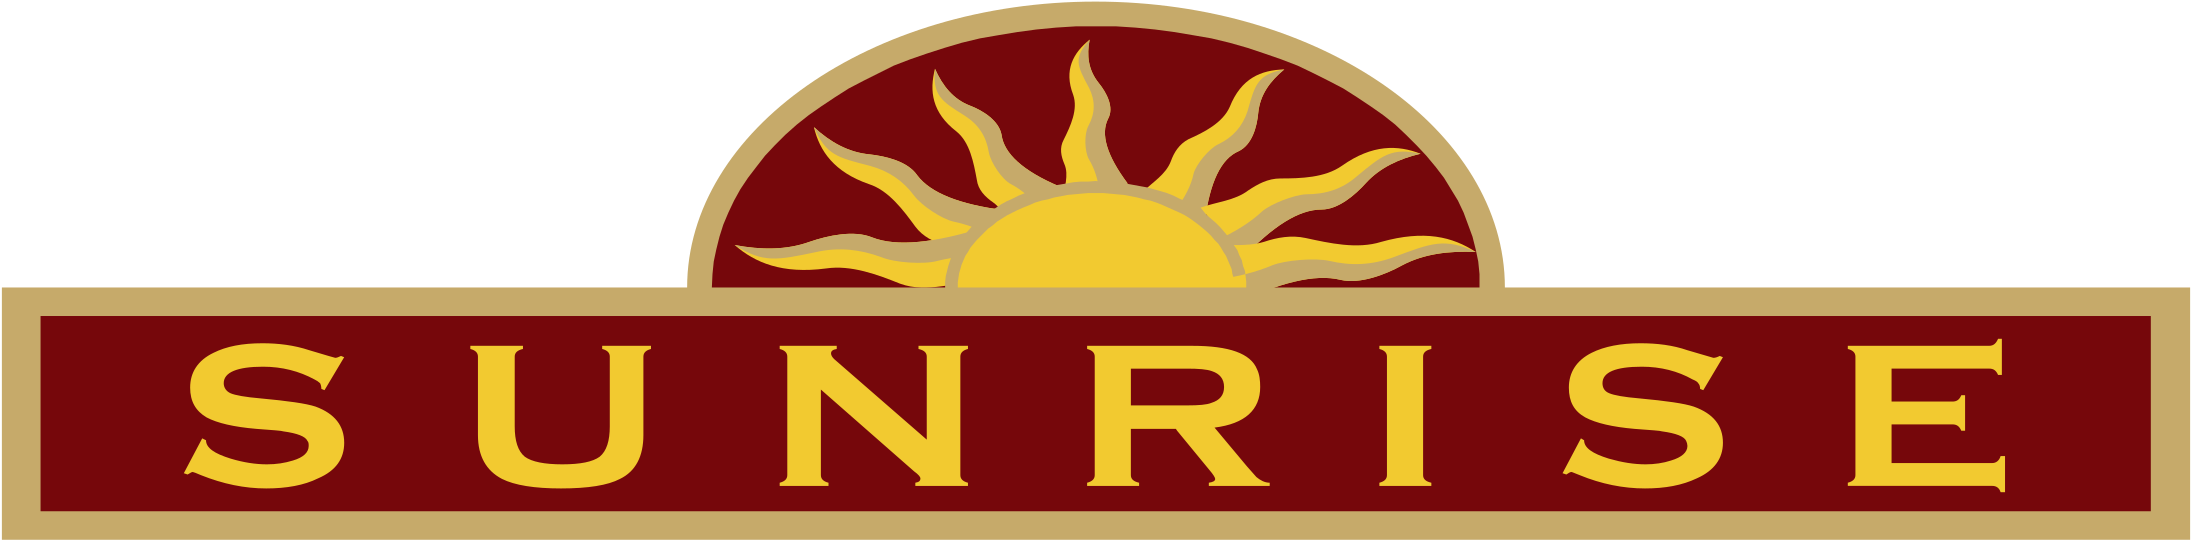 Sunrise Logo Png Transparent - Sunrise (2400x2400), Png Download